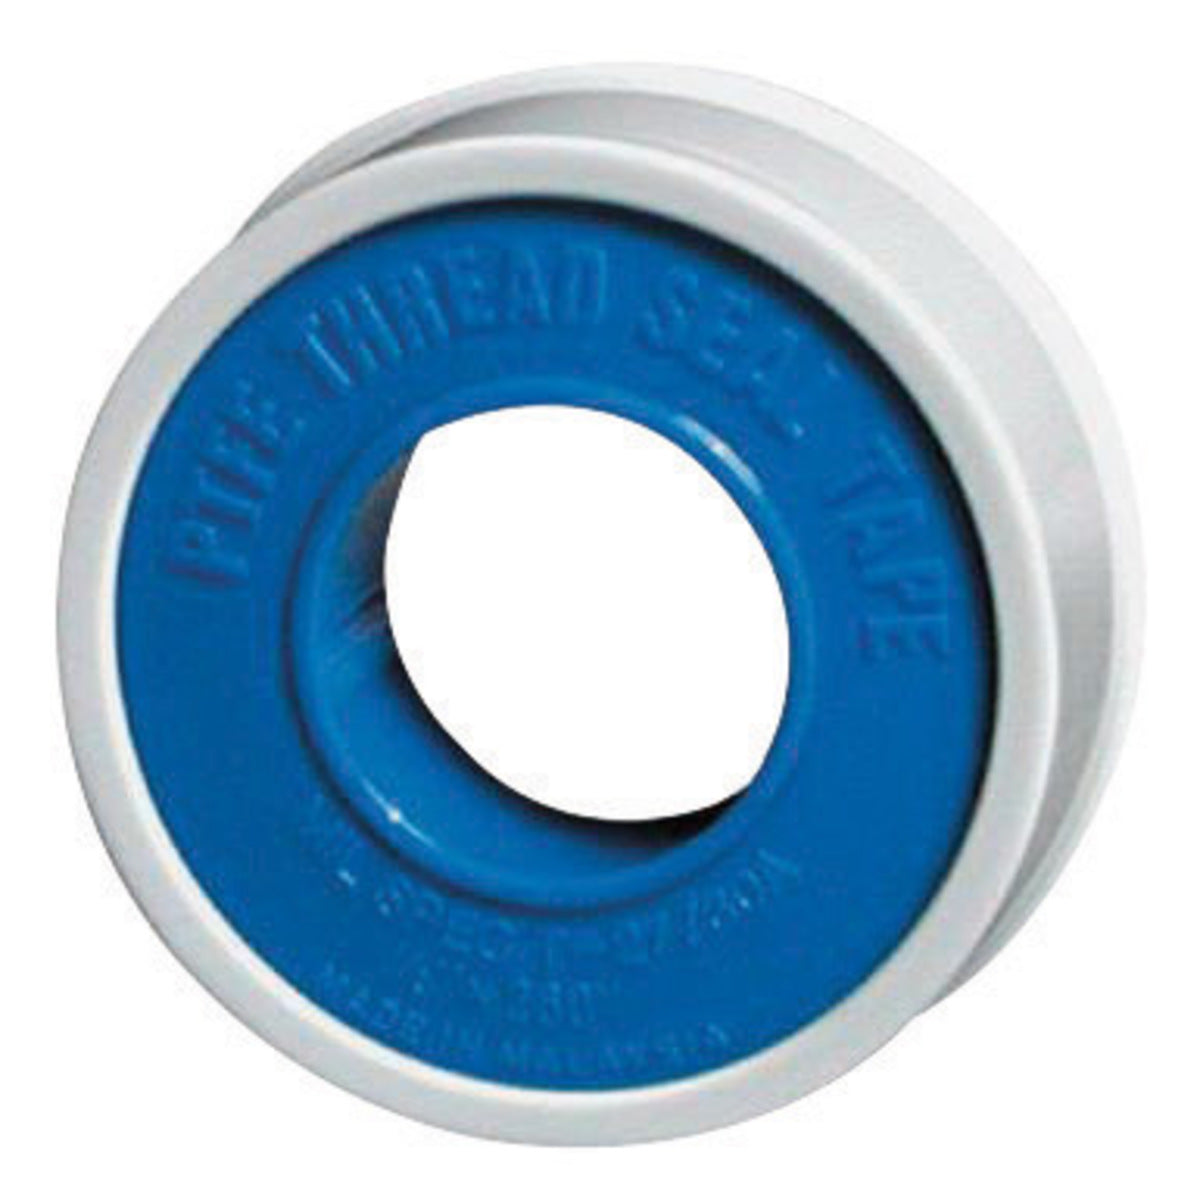 La-Co Markal Pipe Thread Tape of PTFE - Contractor Grade - 3/4" x 520"